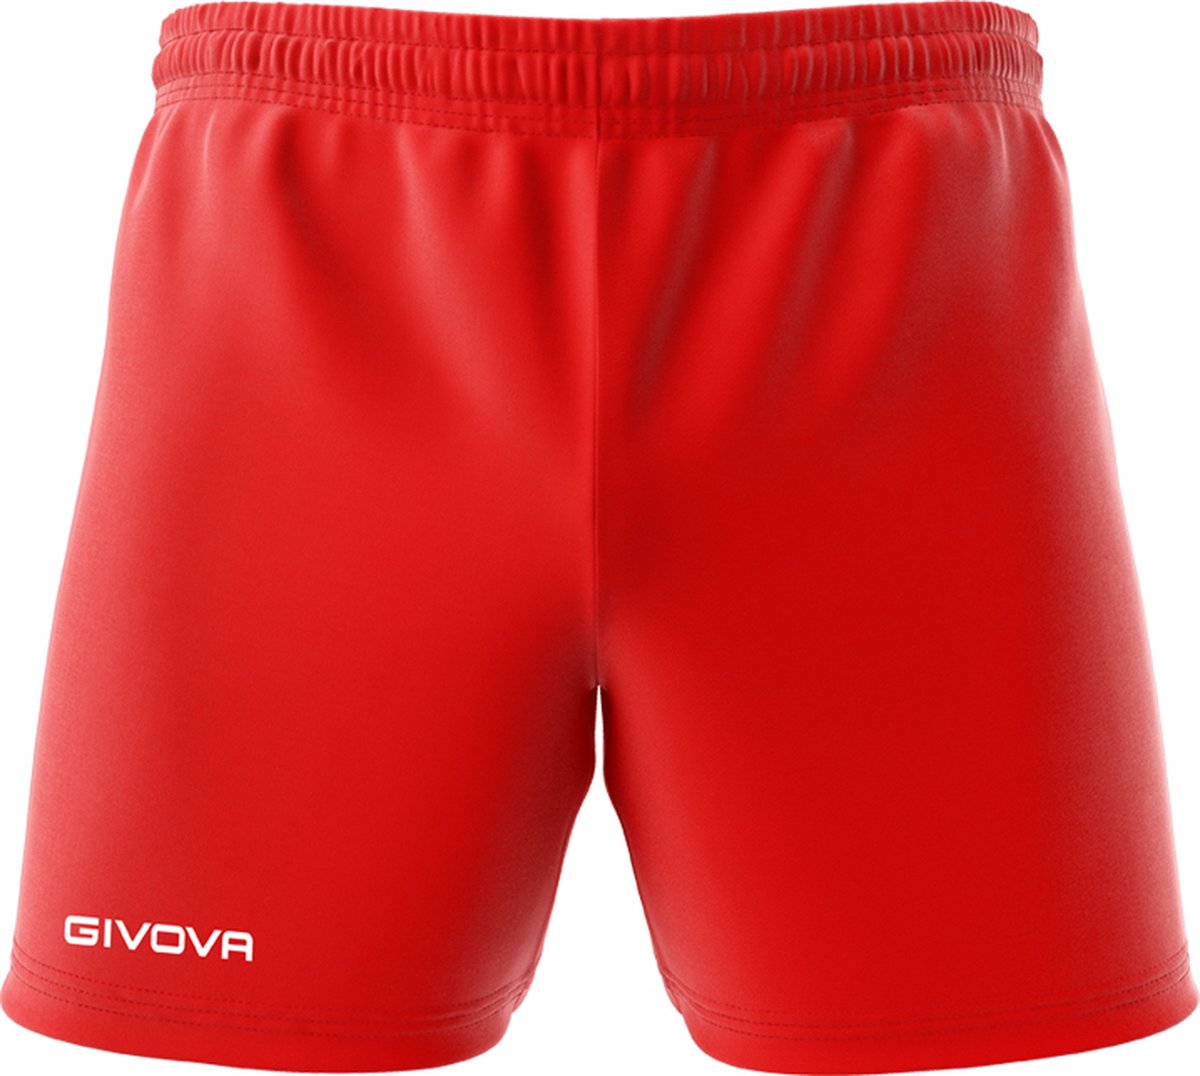 Short Givova Capo P018, korte broek rood, maat S, geborduurd logo